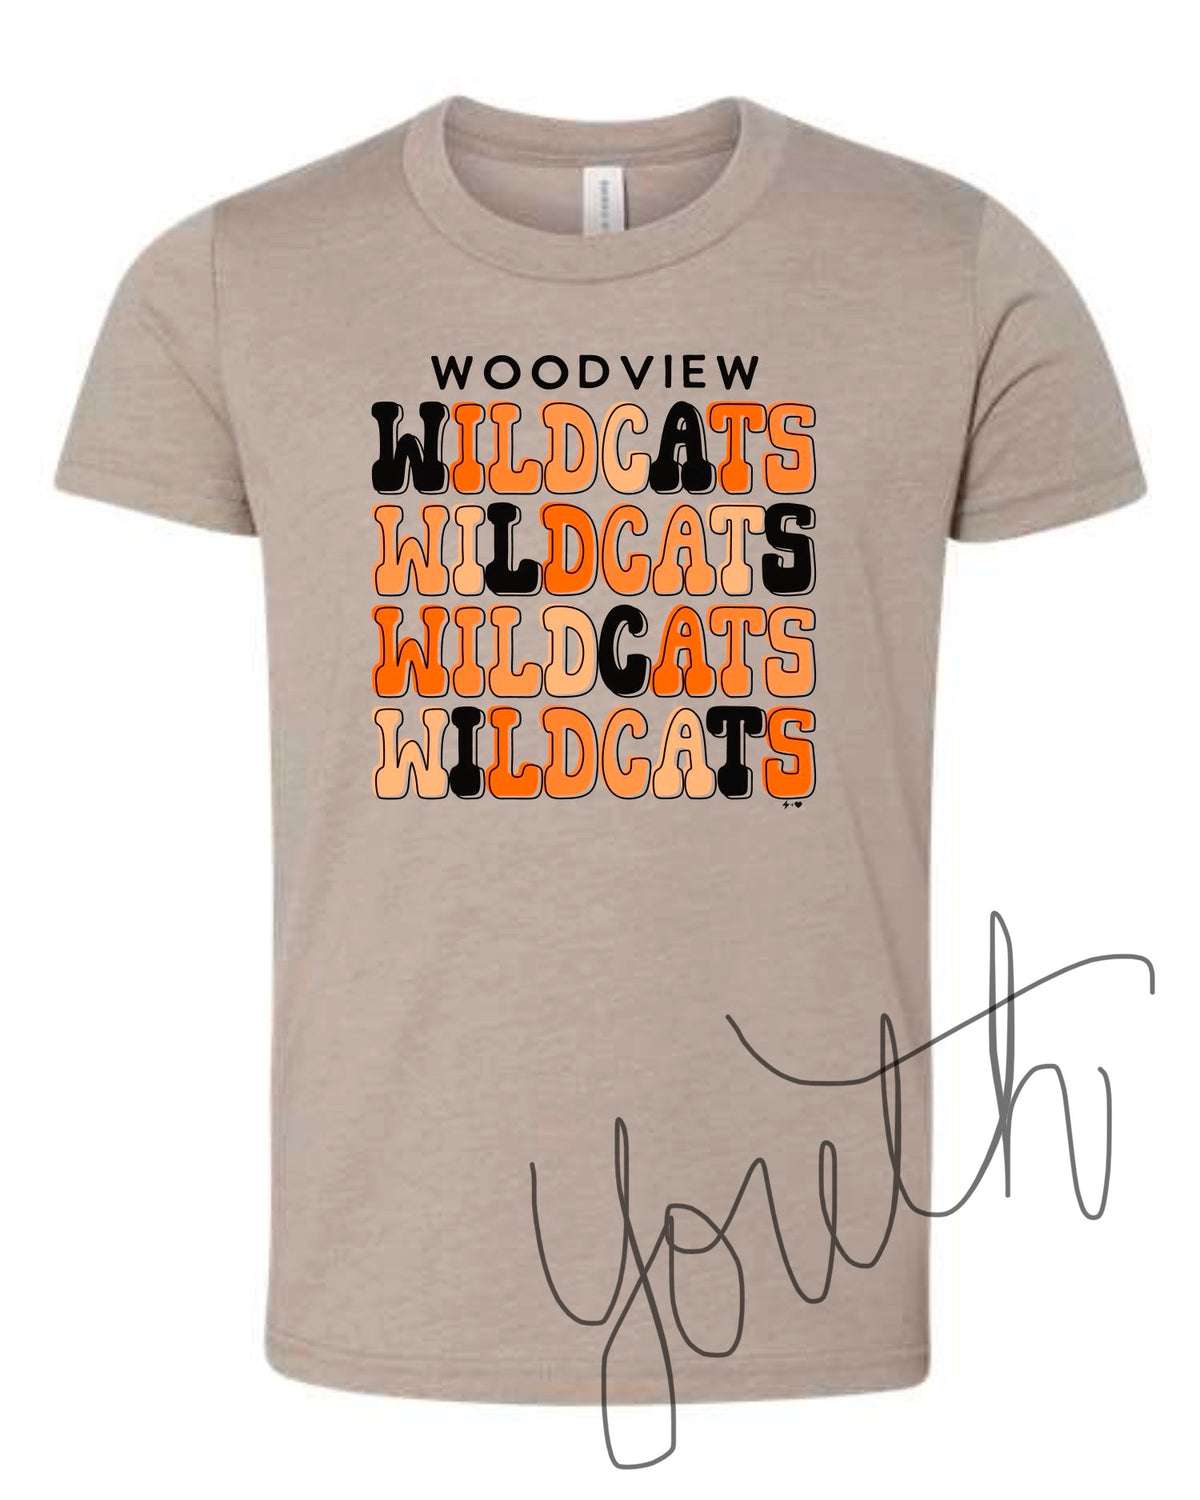 Woodview Wildcats Tee - PREORDER